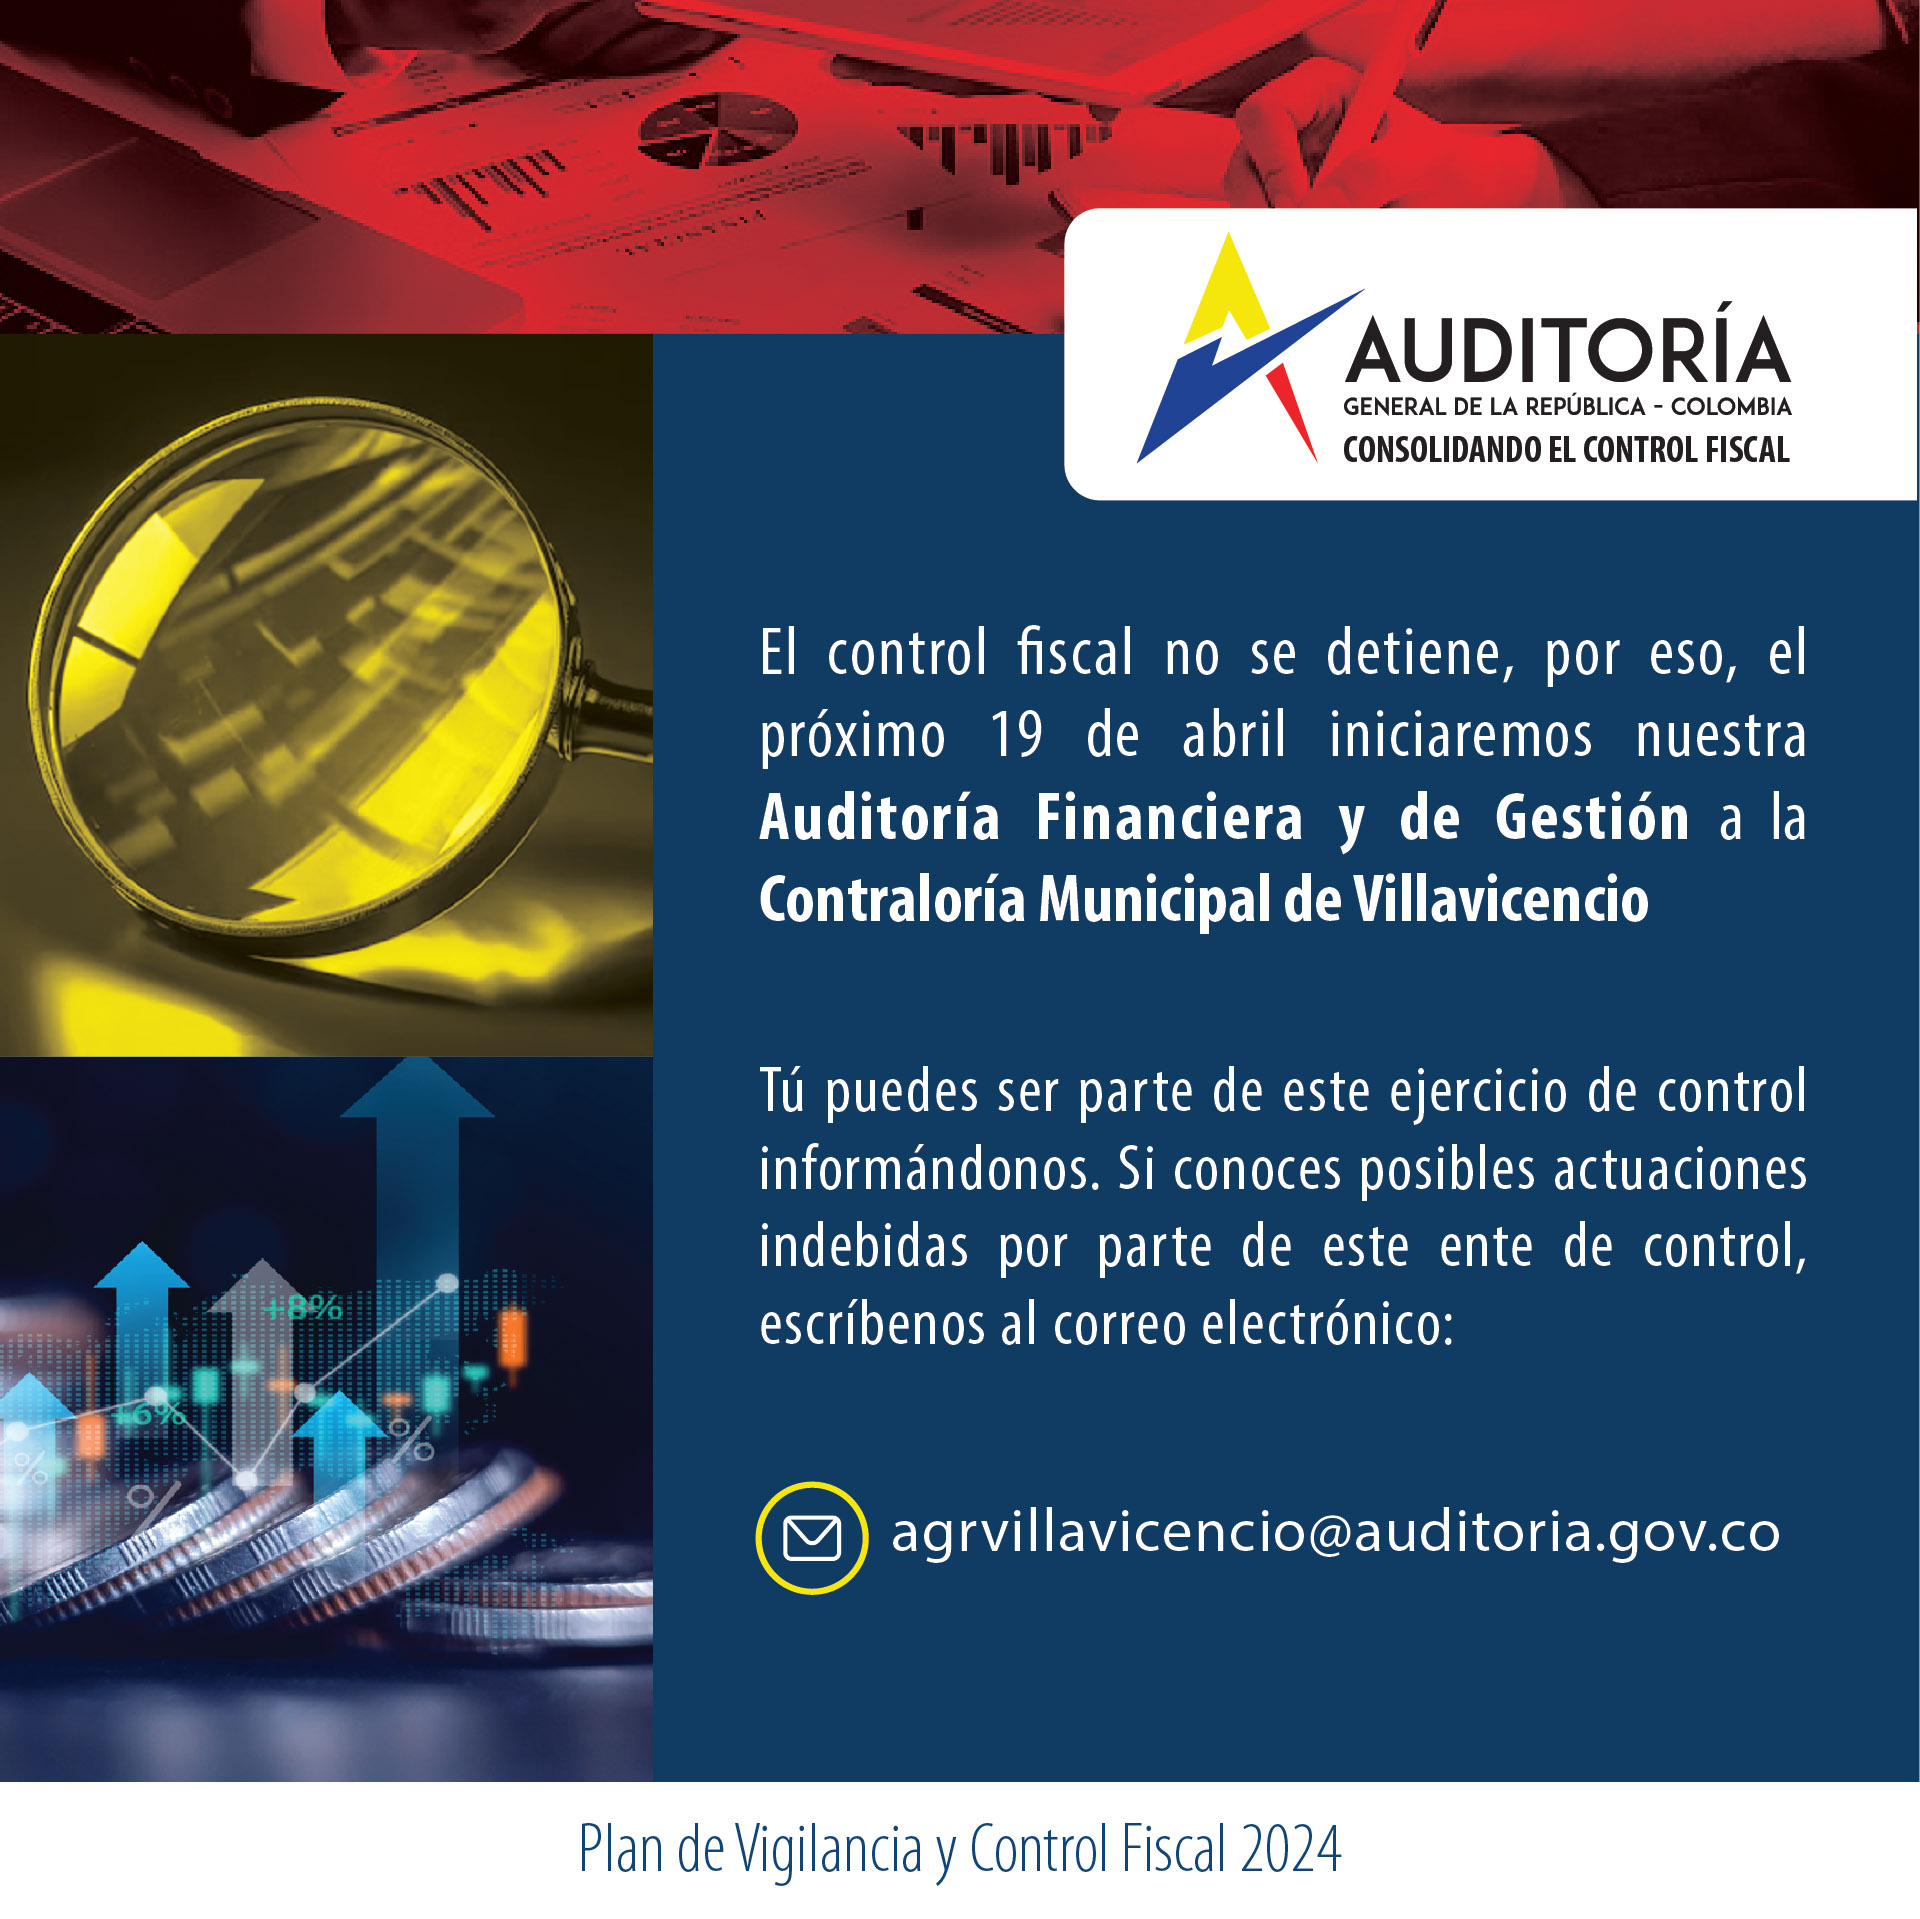 Invitación a ciudadanía a brindar información para Auditoría Financiera y de Gestión a Contraloría de Villavicencio